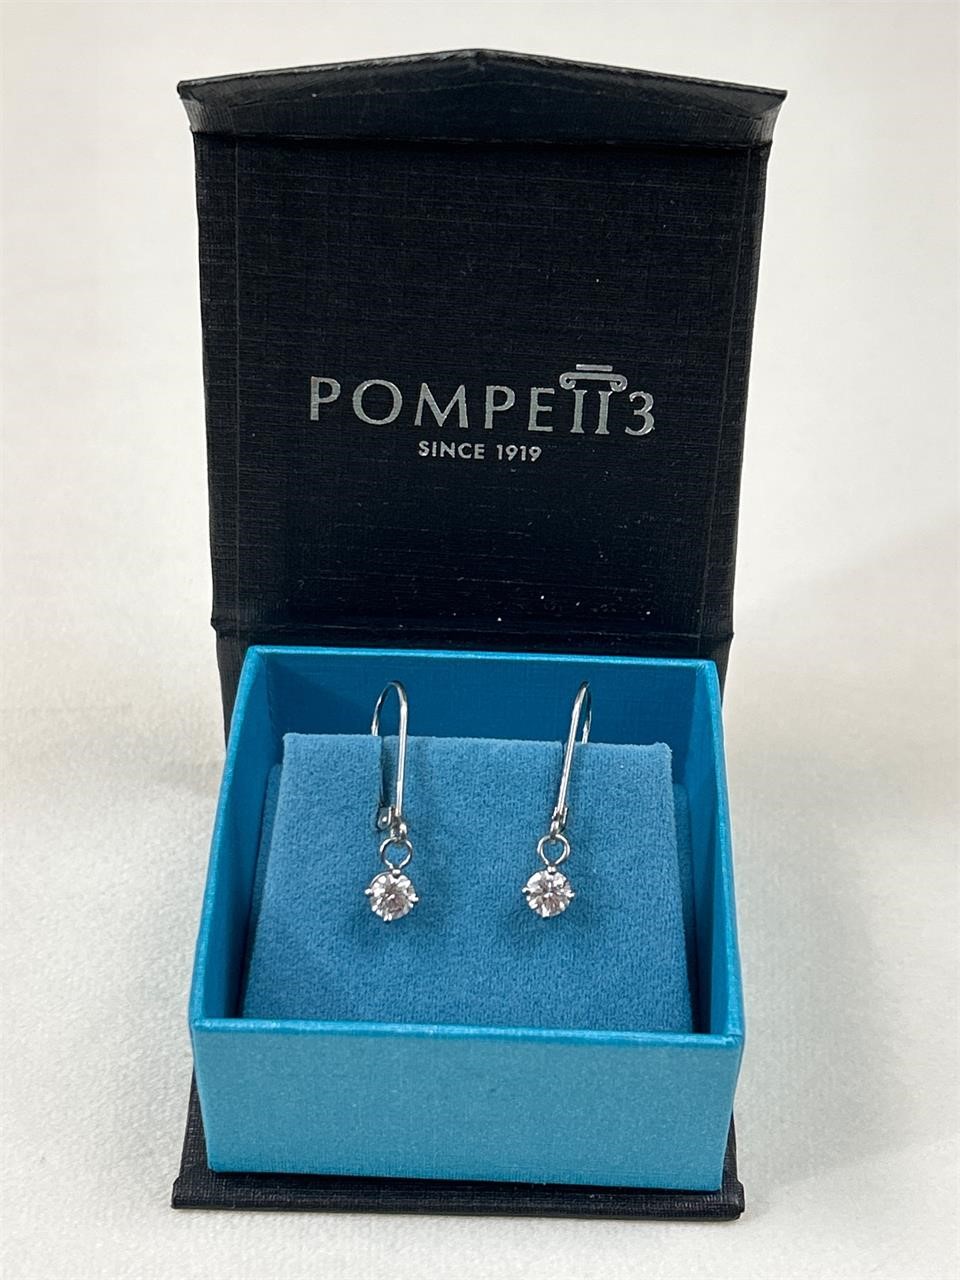 Stamped 950 real diamond earrings